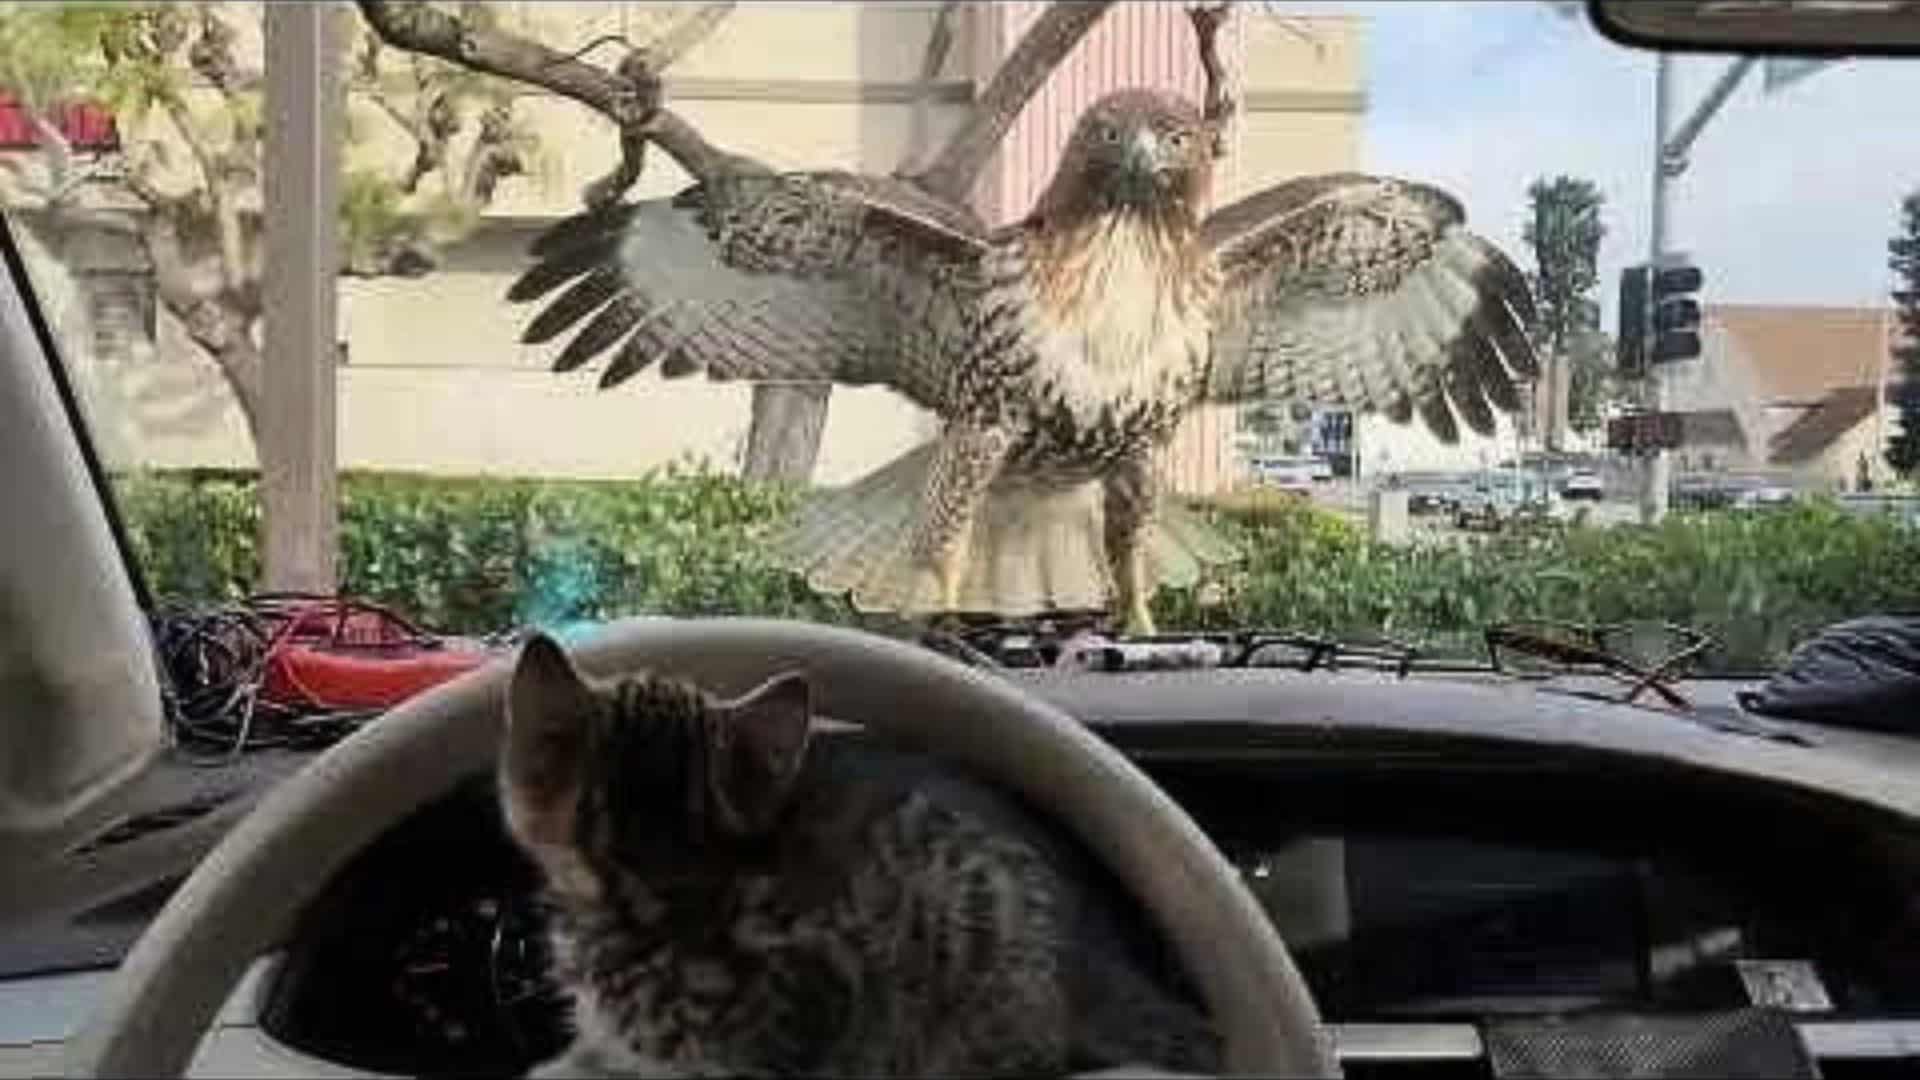 Kitten Almost Eaten by Hawk